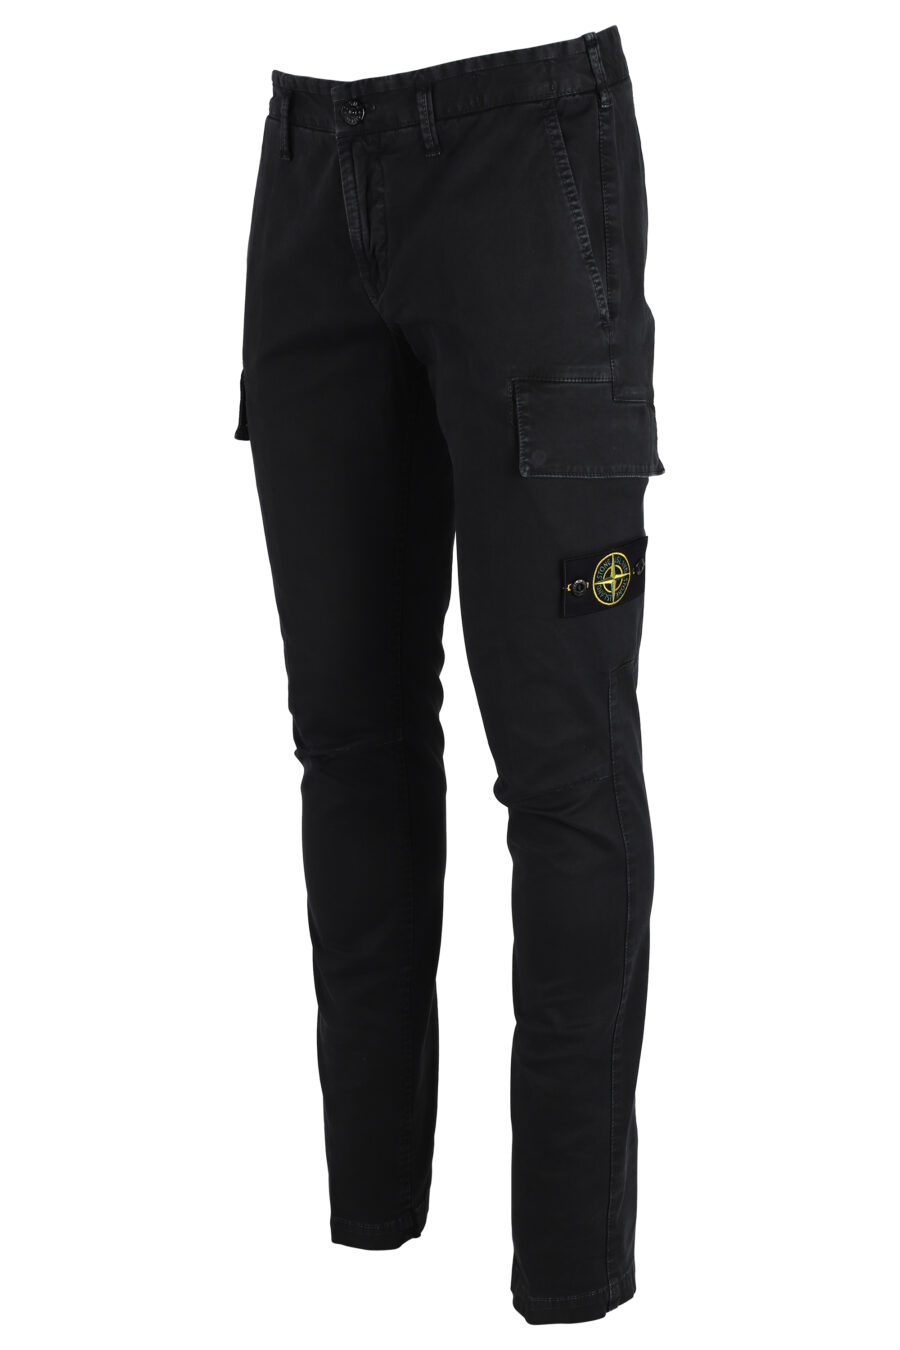 Pantalón negro con bolsillos laterales y parche - IMG 4795